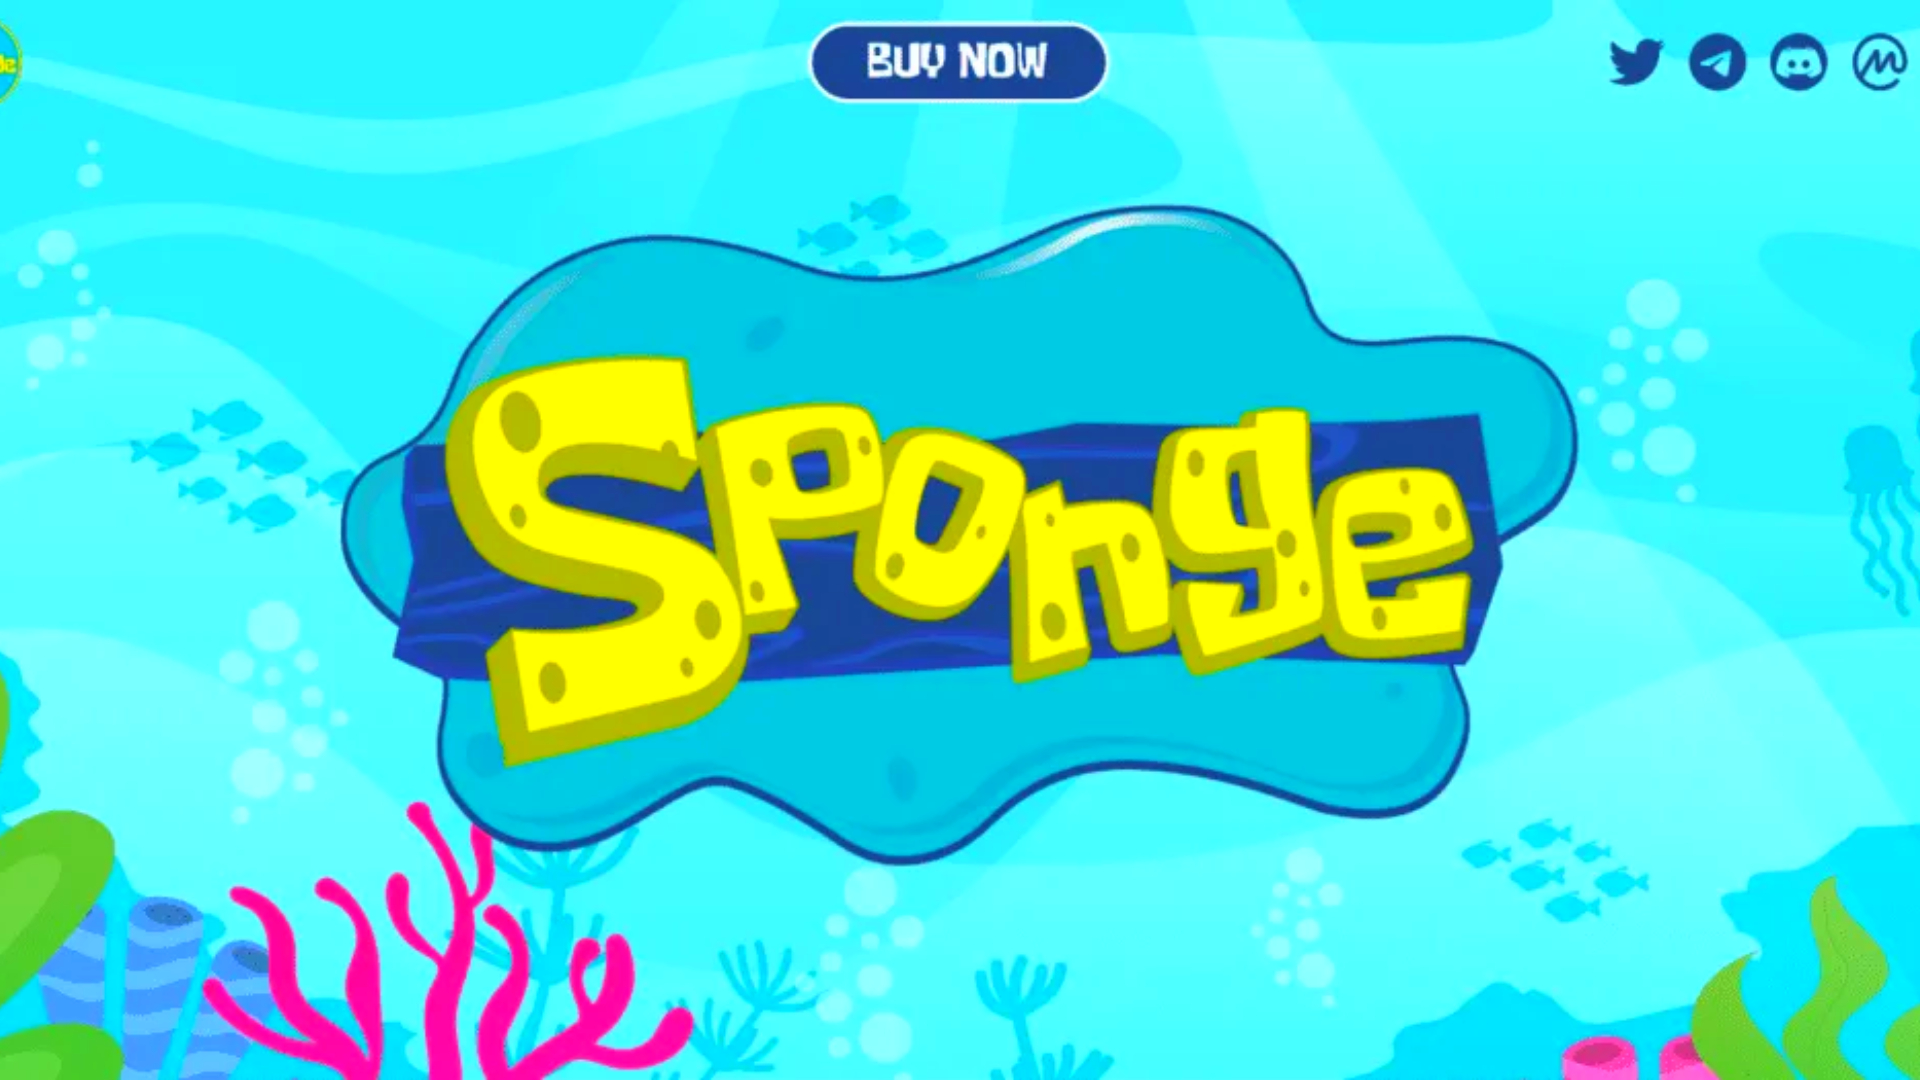 Memecoin Sponge